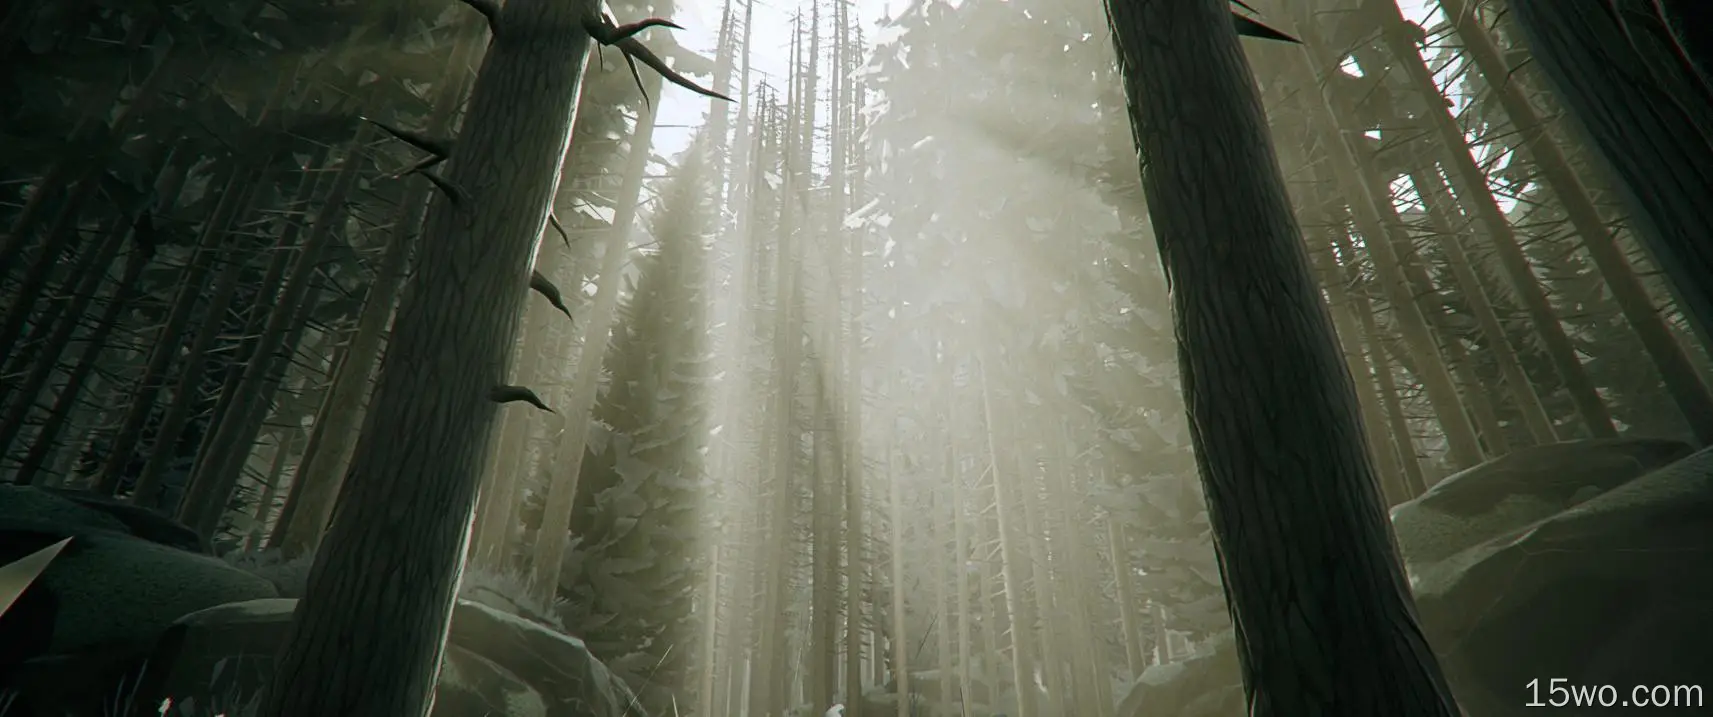 长树、森林、薄雾